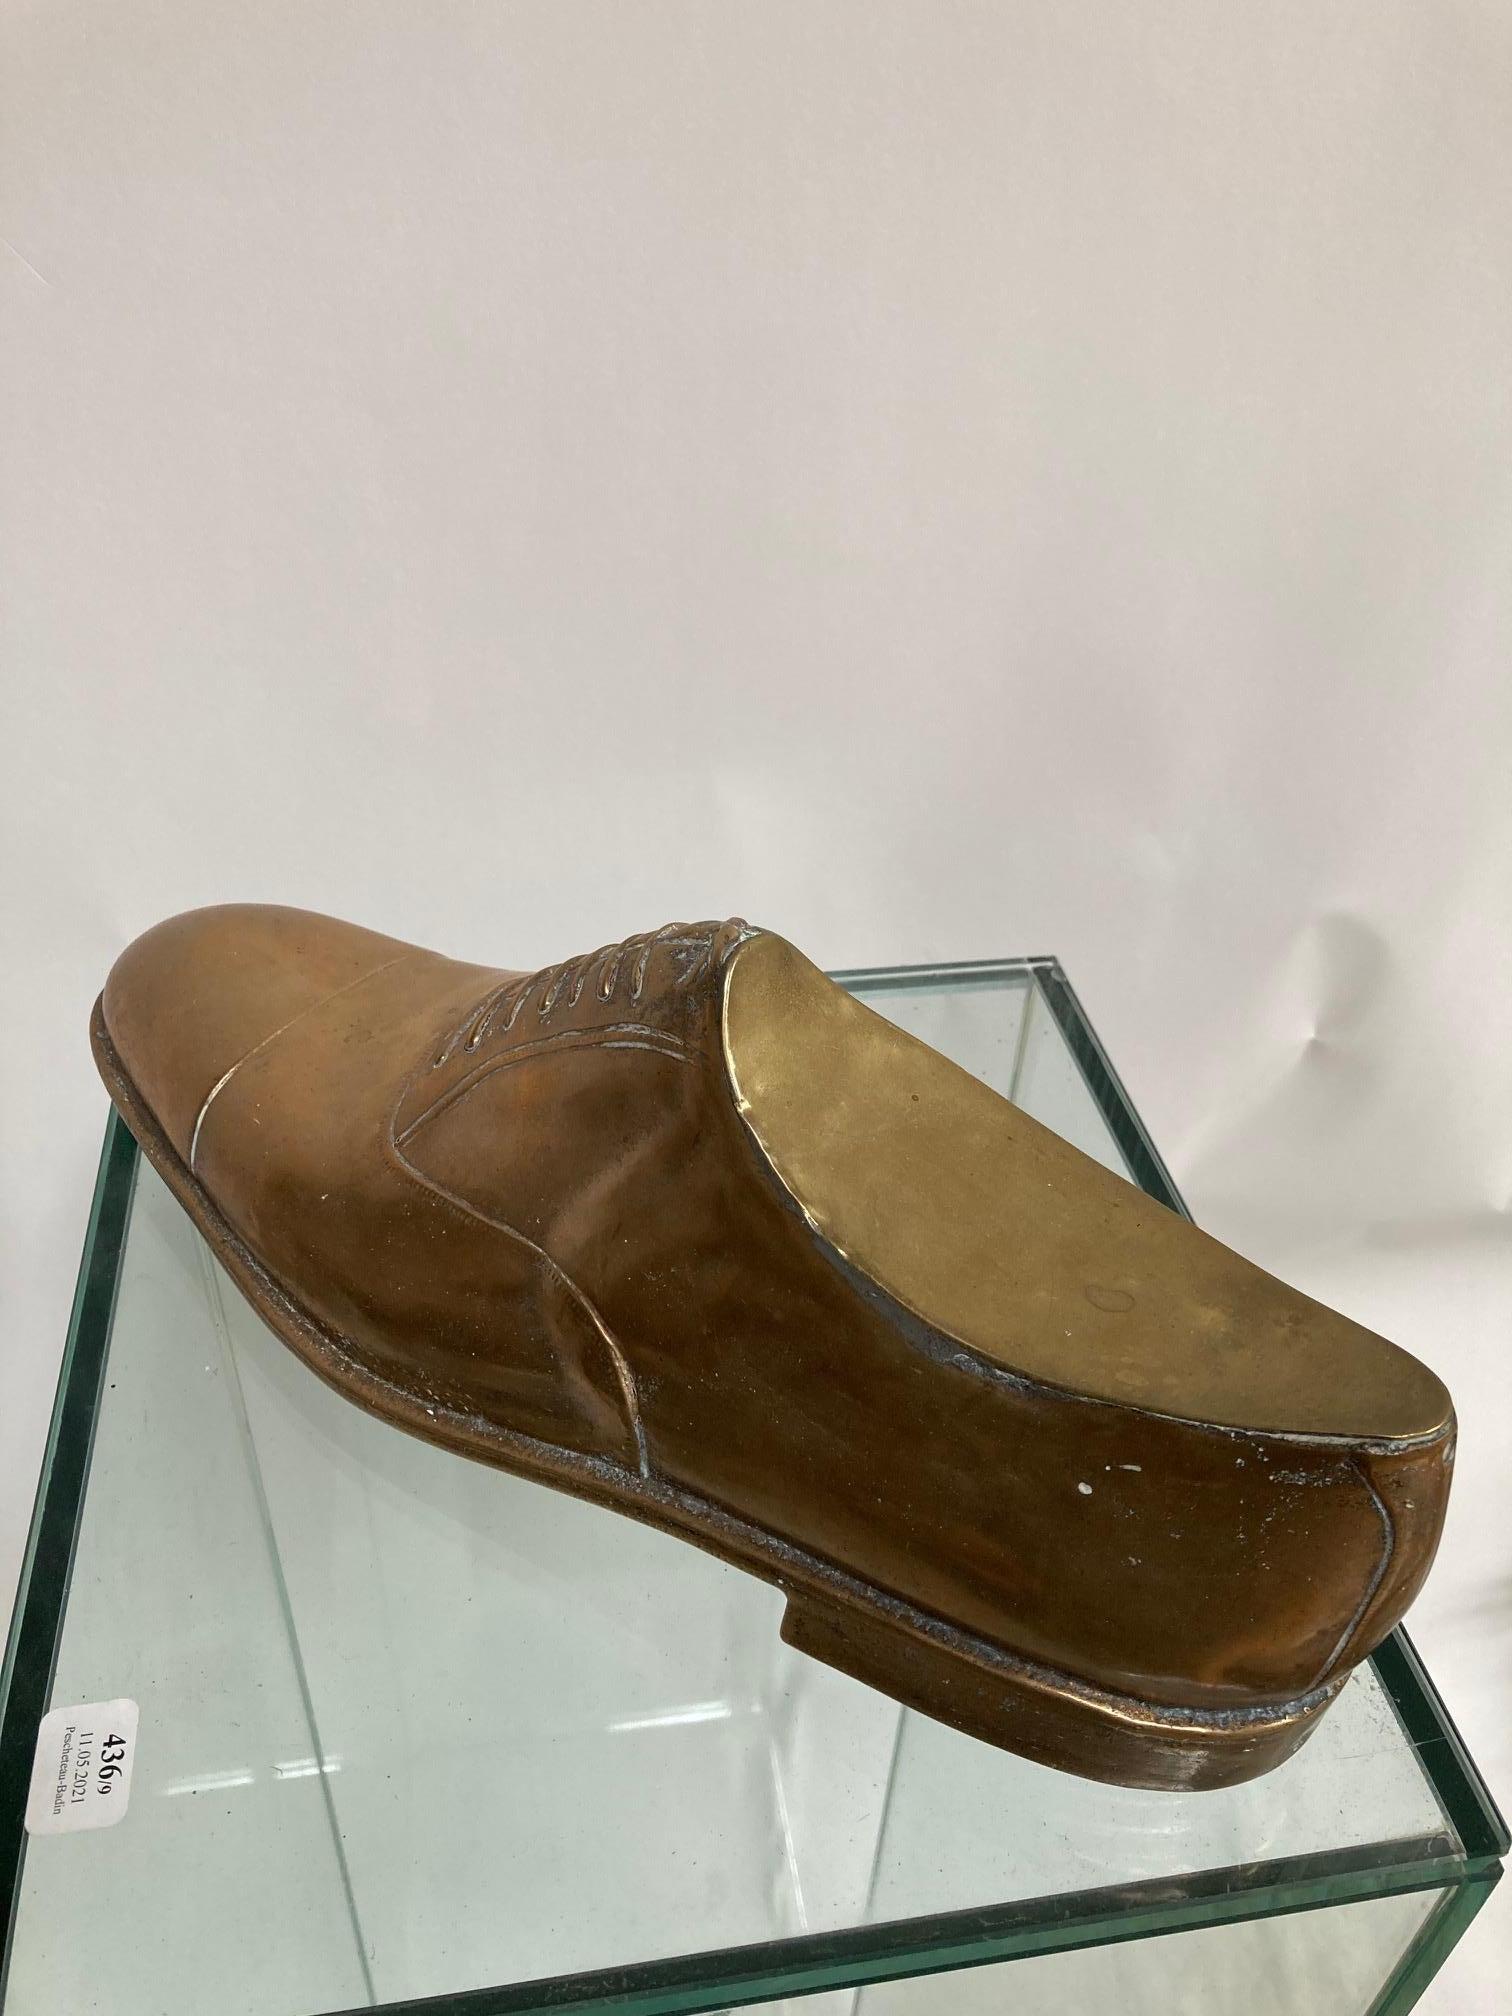 1950s dress shoes